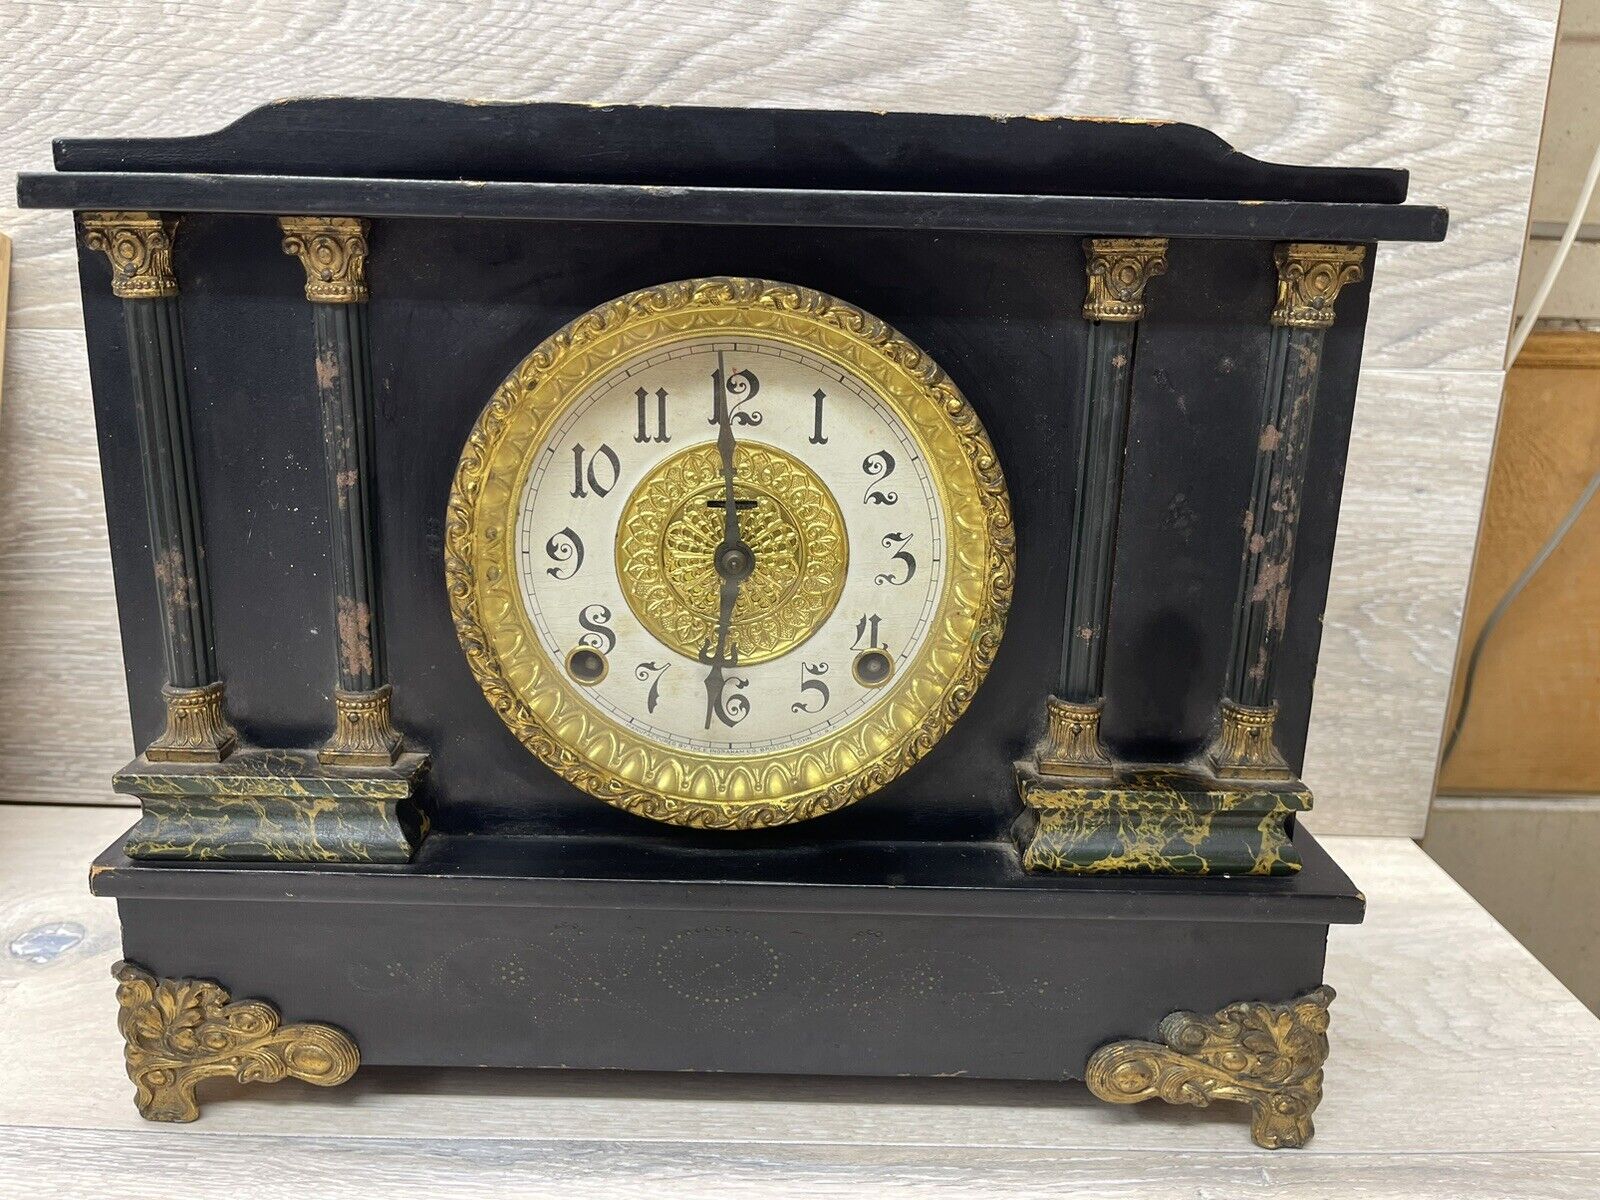 E. Ingraham Co. Antique Mantel Green Marble Clock For Parts/Repair No Pendulum